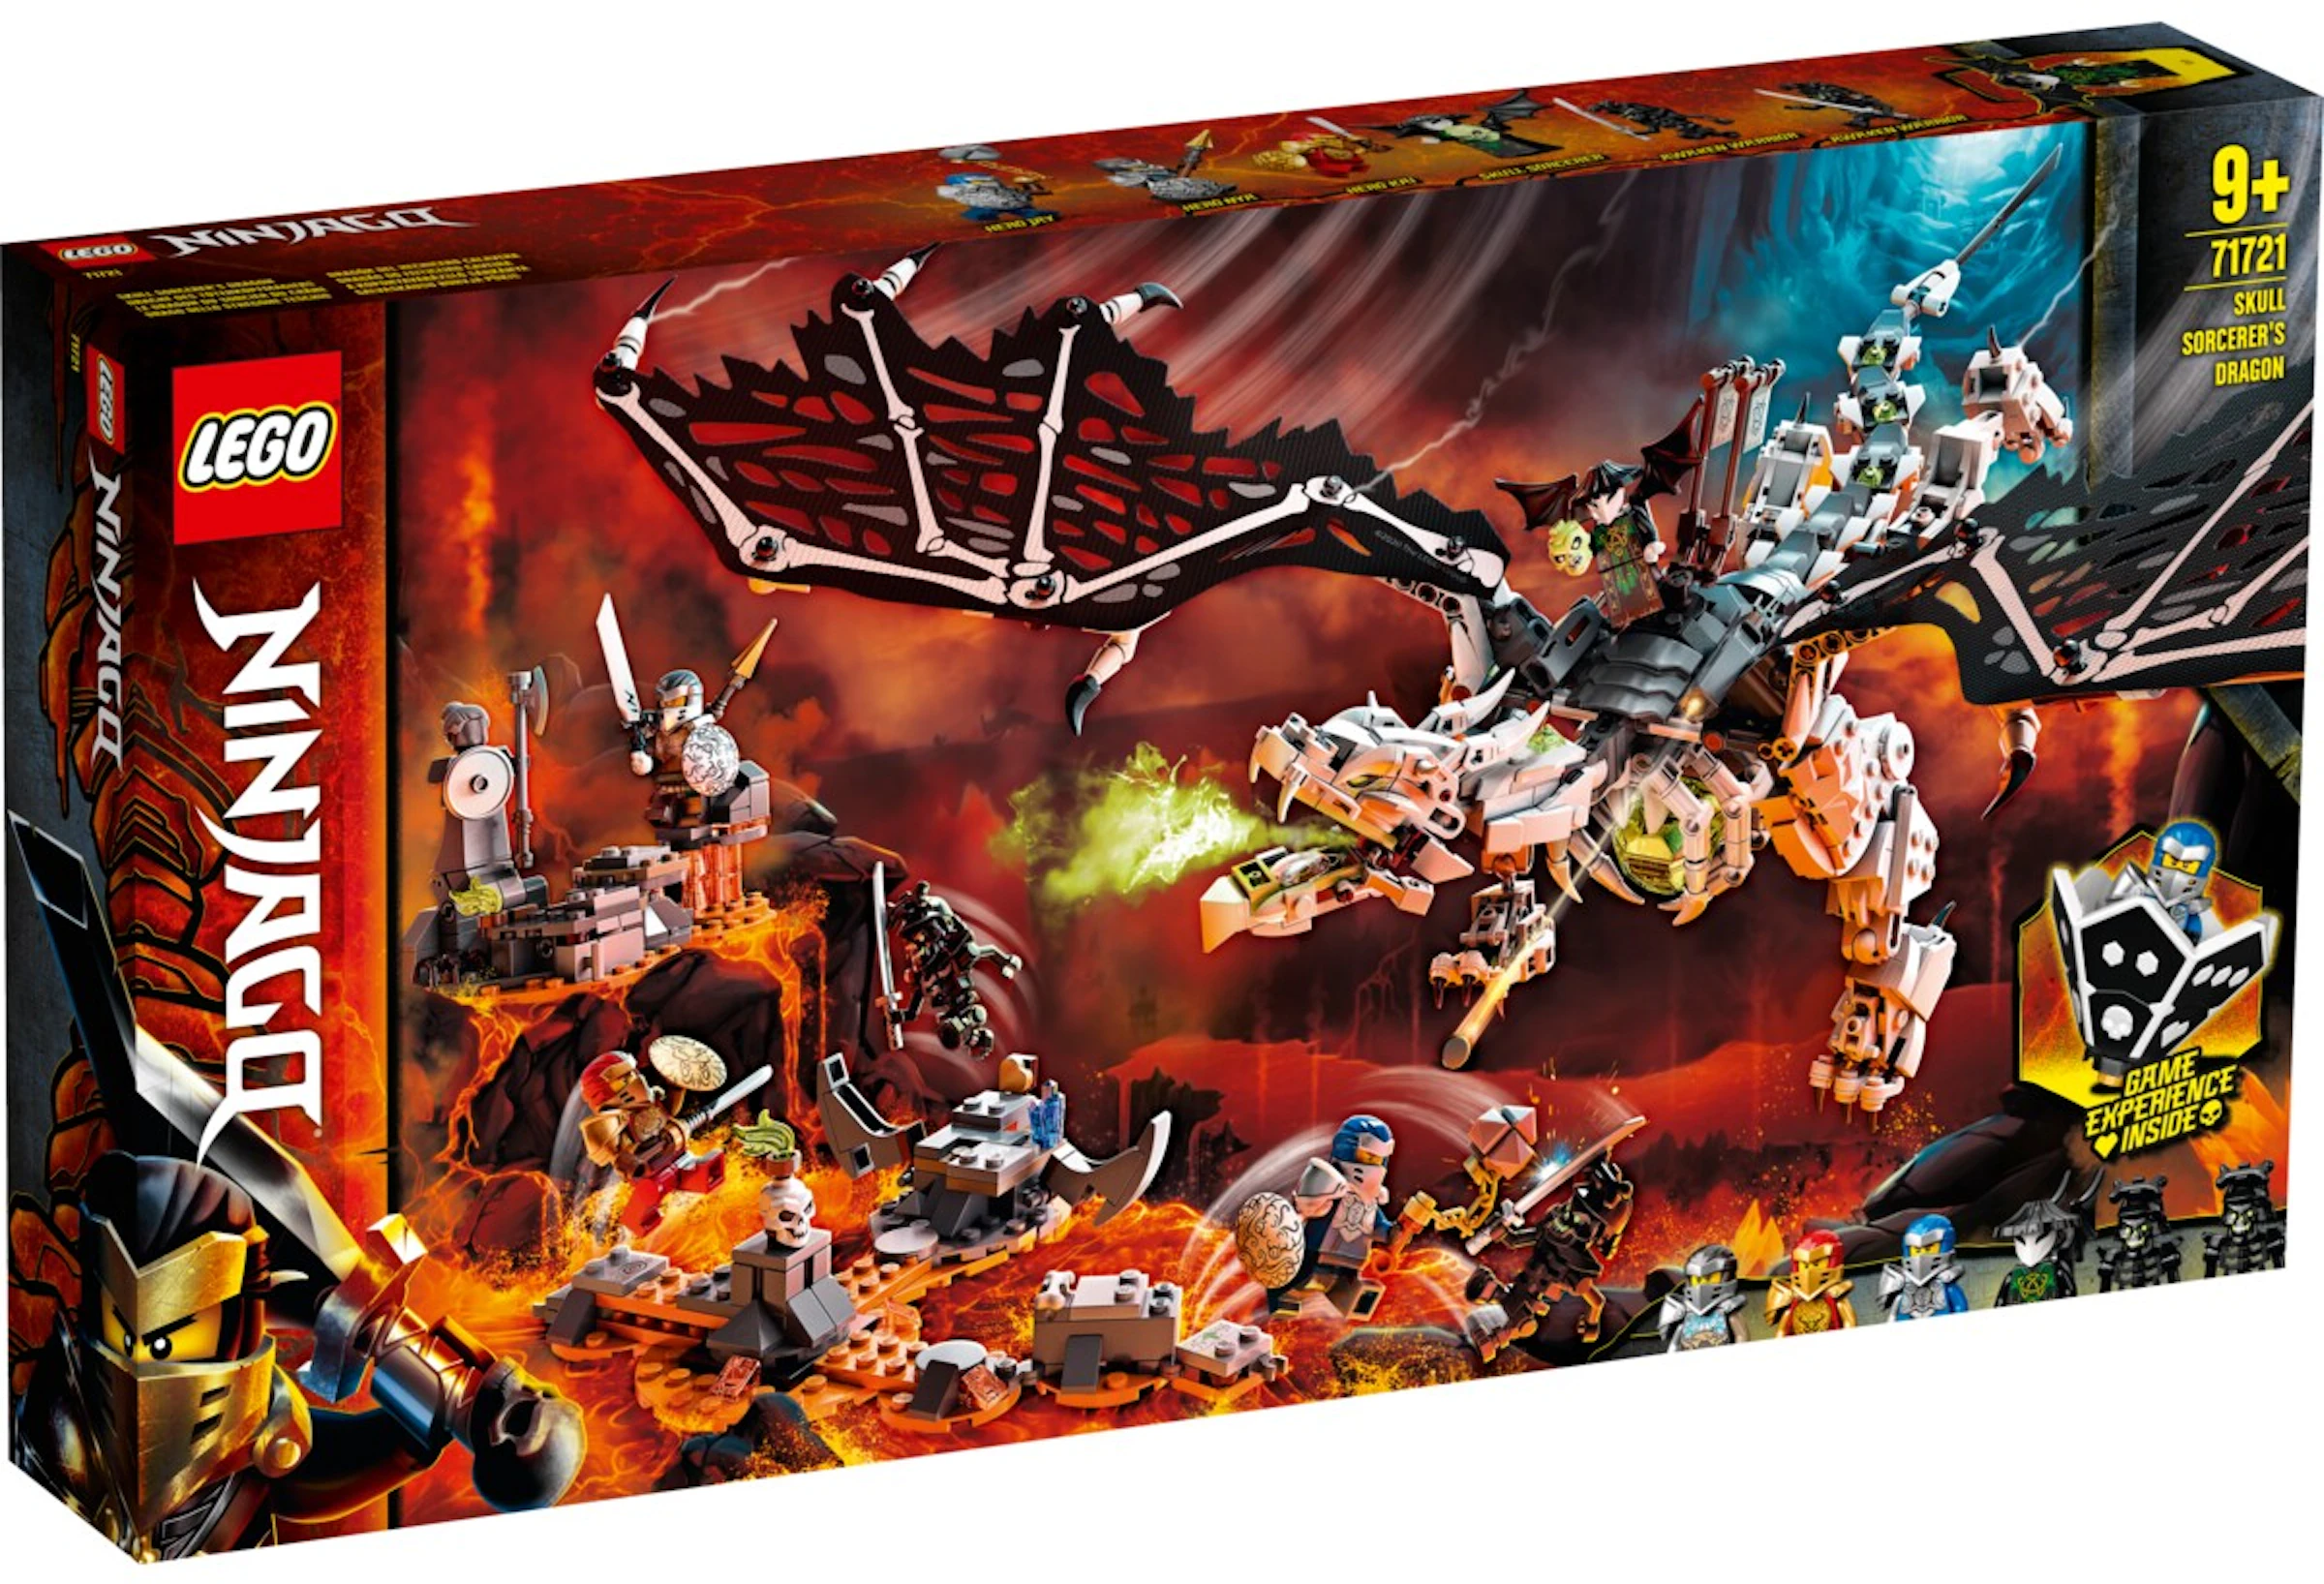 Rode datum Duizeligheid spion LEGO Ninjago Skull Sorcerer's Dragon Set 71721 - US